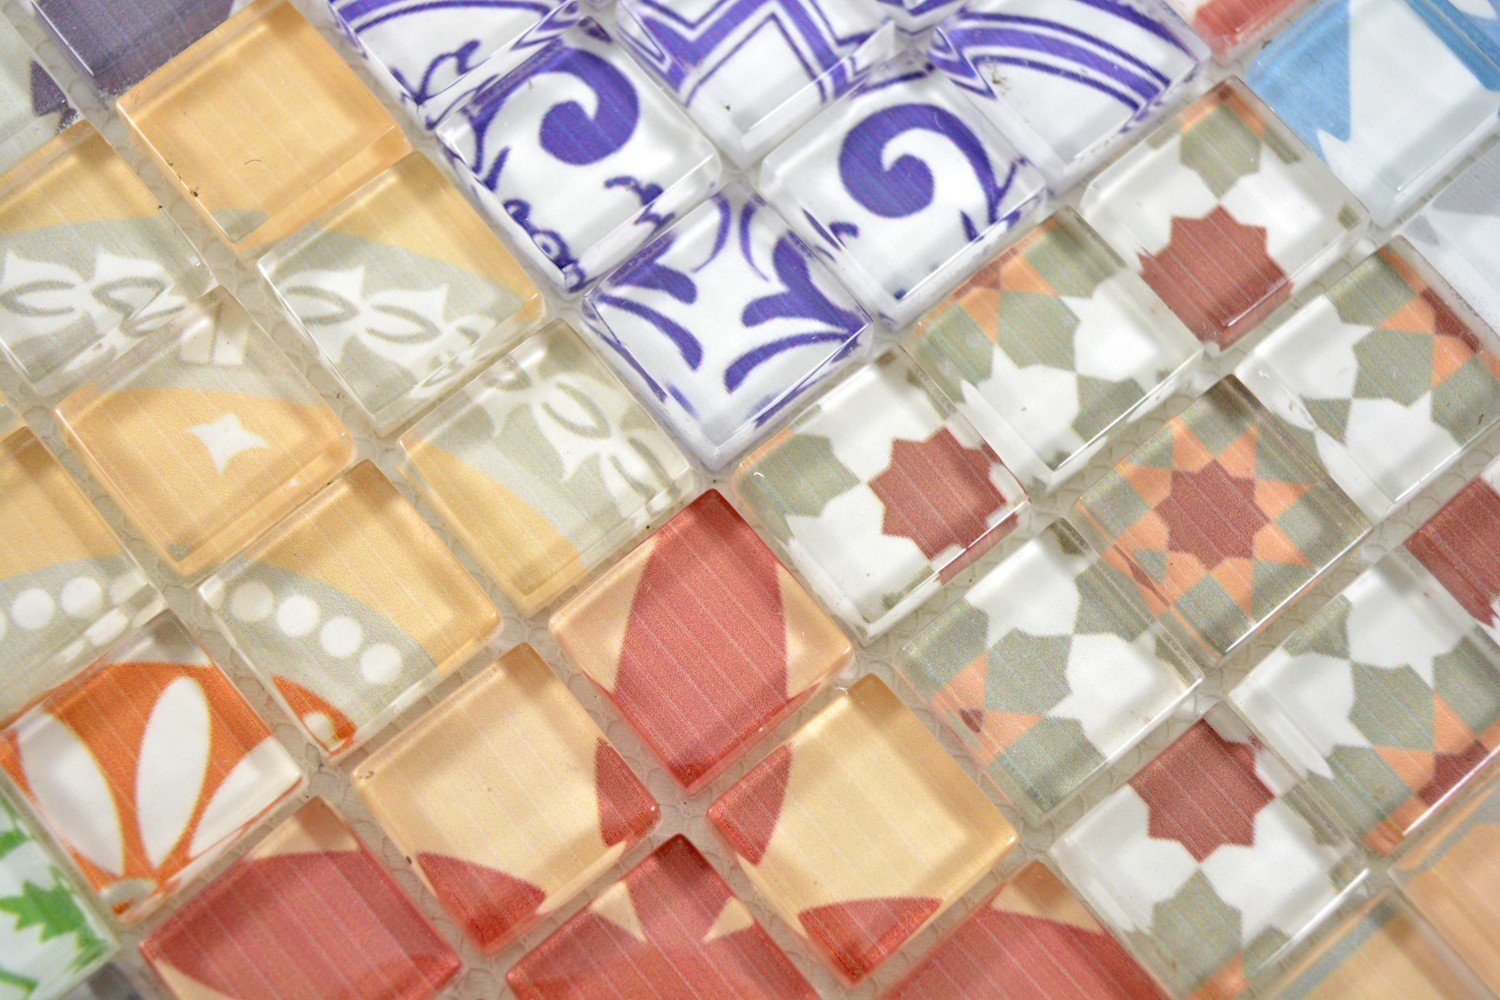 Glasmosaik Mosaikfliesen 10-teilig 10 Matten, Mosani mehrfarben glänzend / Set, Crystal Mosaikfliesen